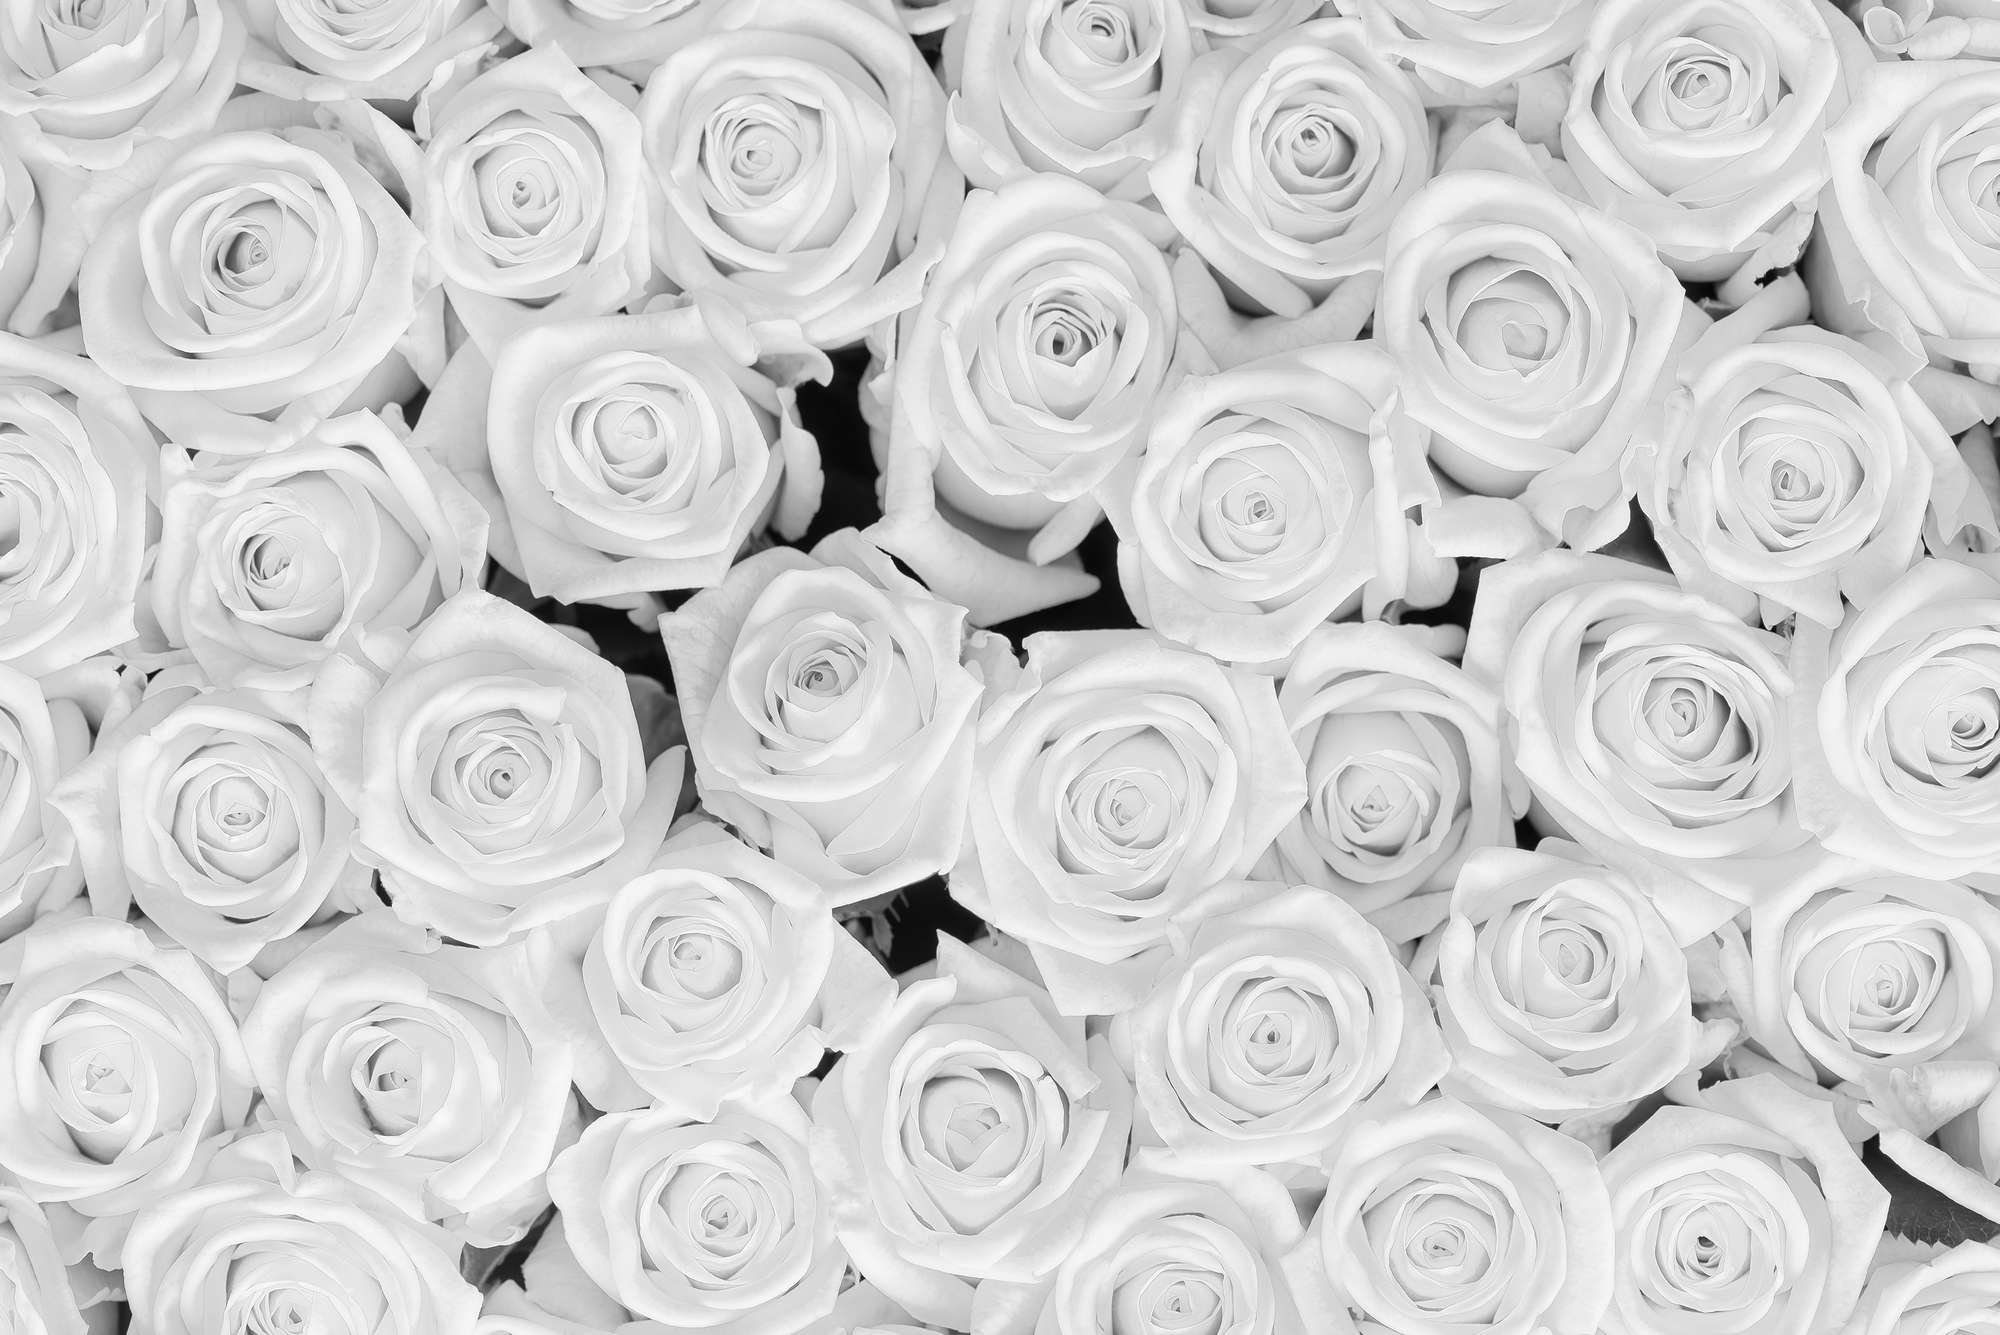             Papel pintado de plantas Rosas blancas sobre vellón liso de primera calidad
        